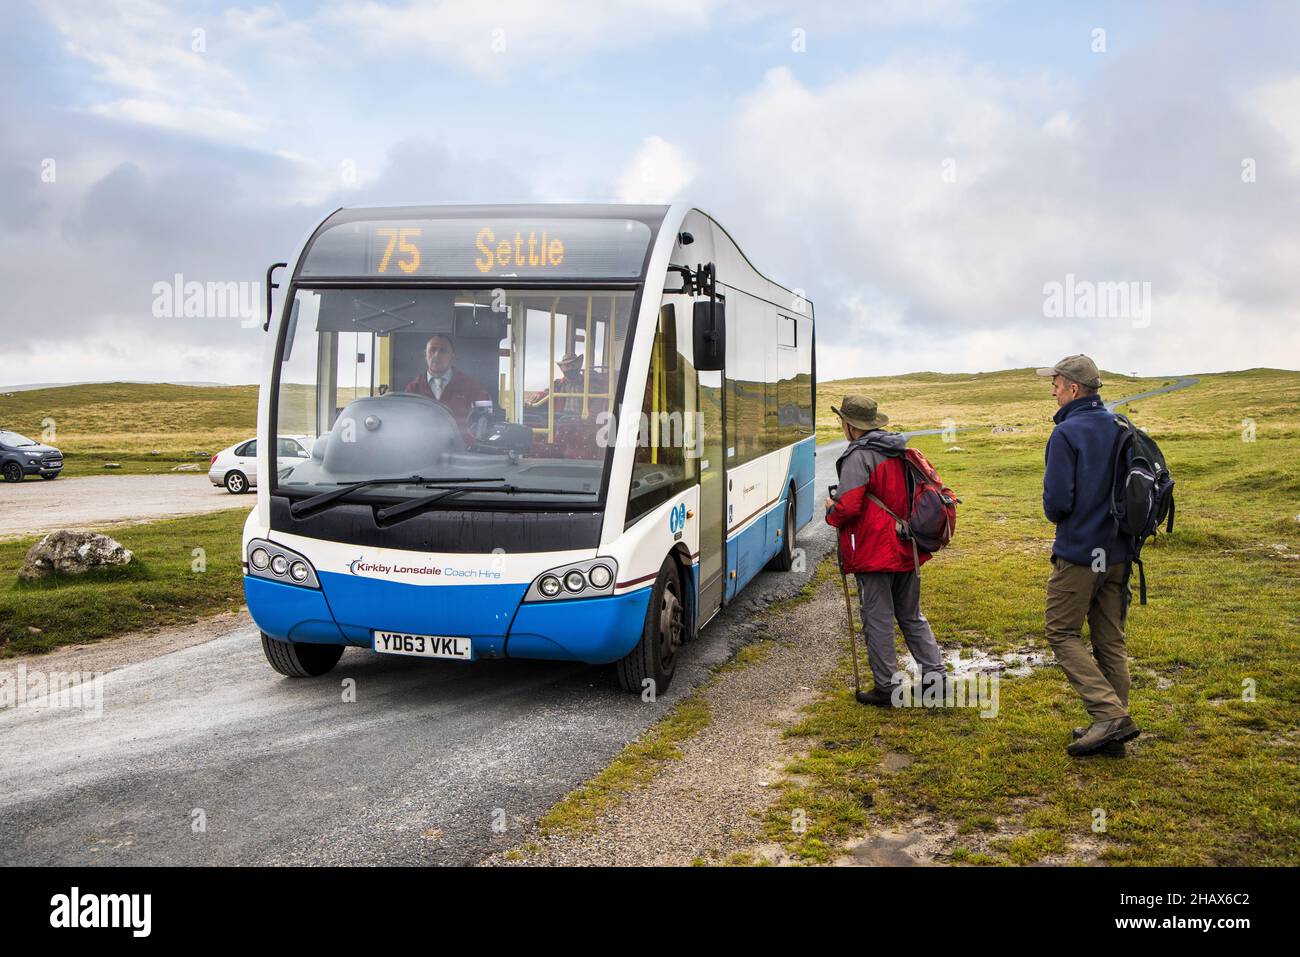 Camminatori che catturano l'autobus della comunità verso Settle da Malham Tarn, Yorkshire Dales, Regno Unito Foto Stock